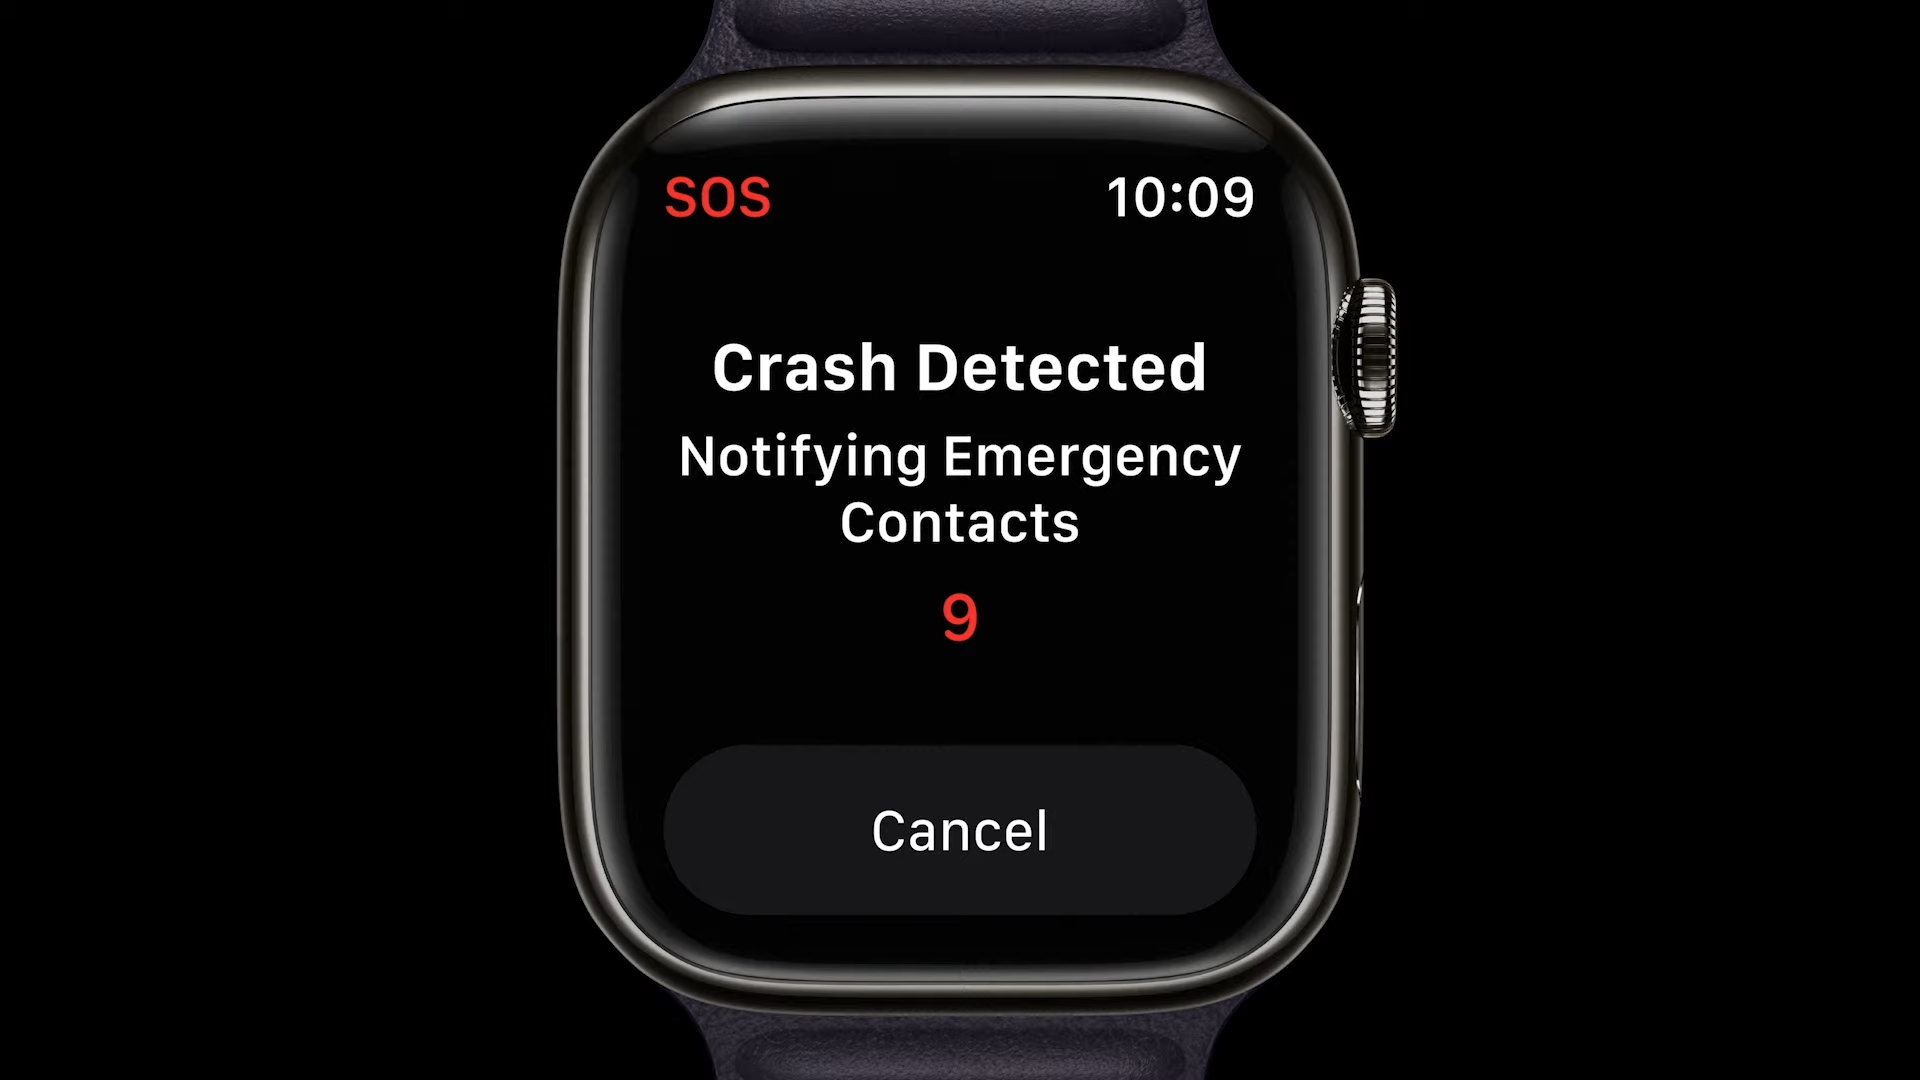 Chytré hodinky Apple Watch SE2 ponúkajú funkciu SOS pre spoľahlivú detekciu pádu aj autonehody.